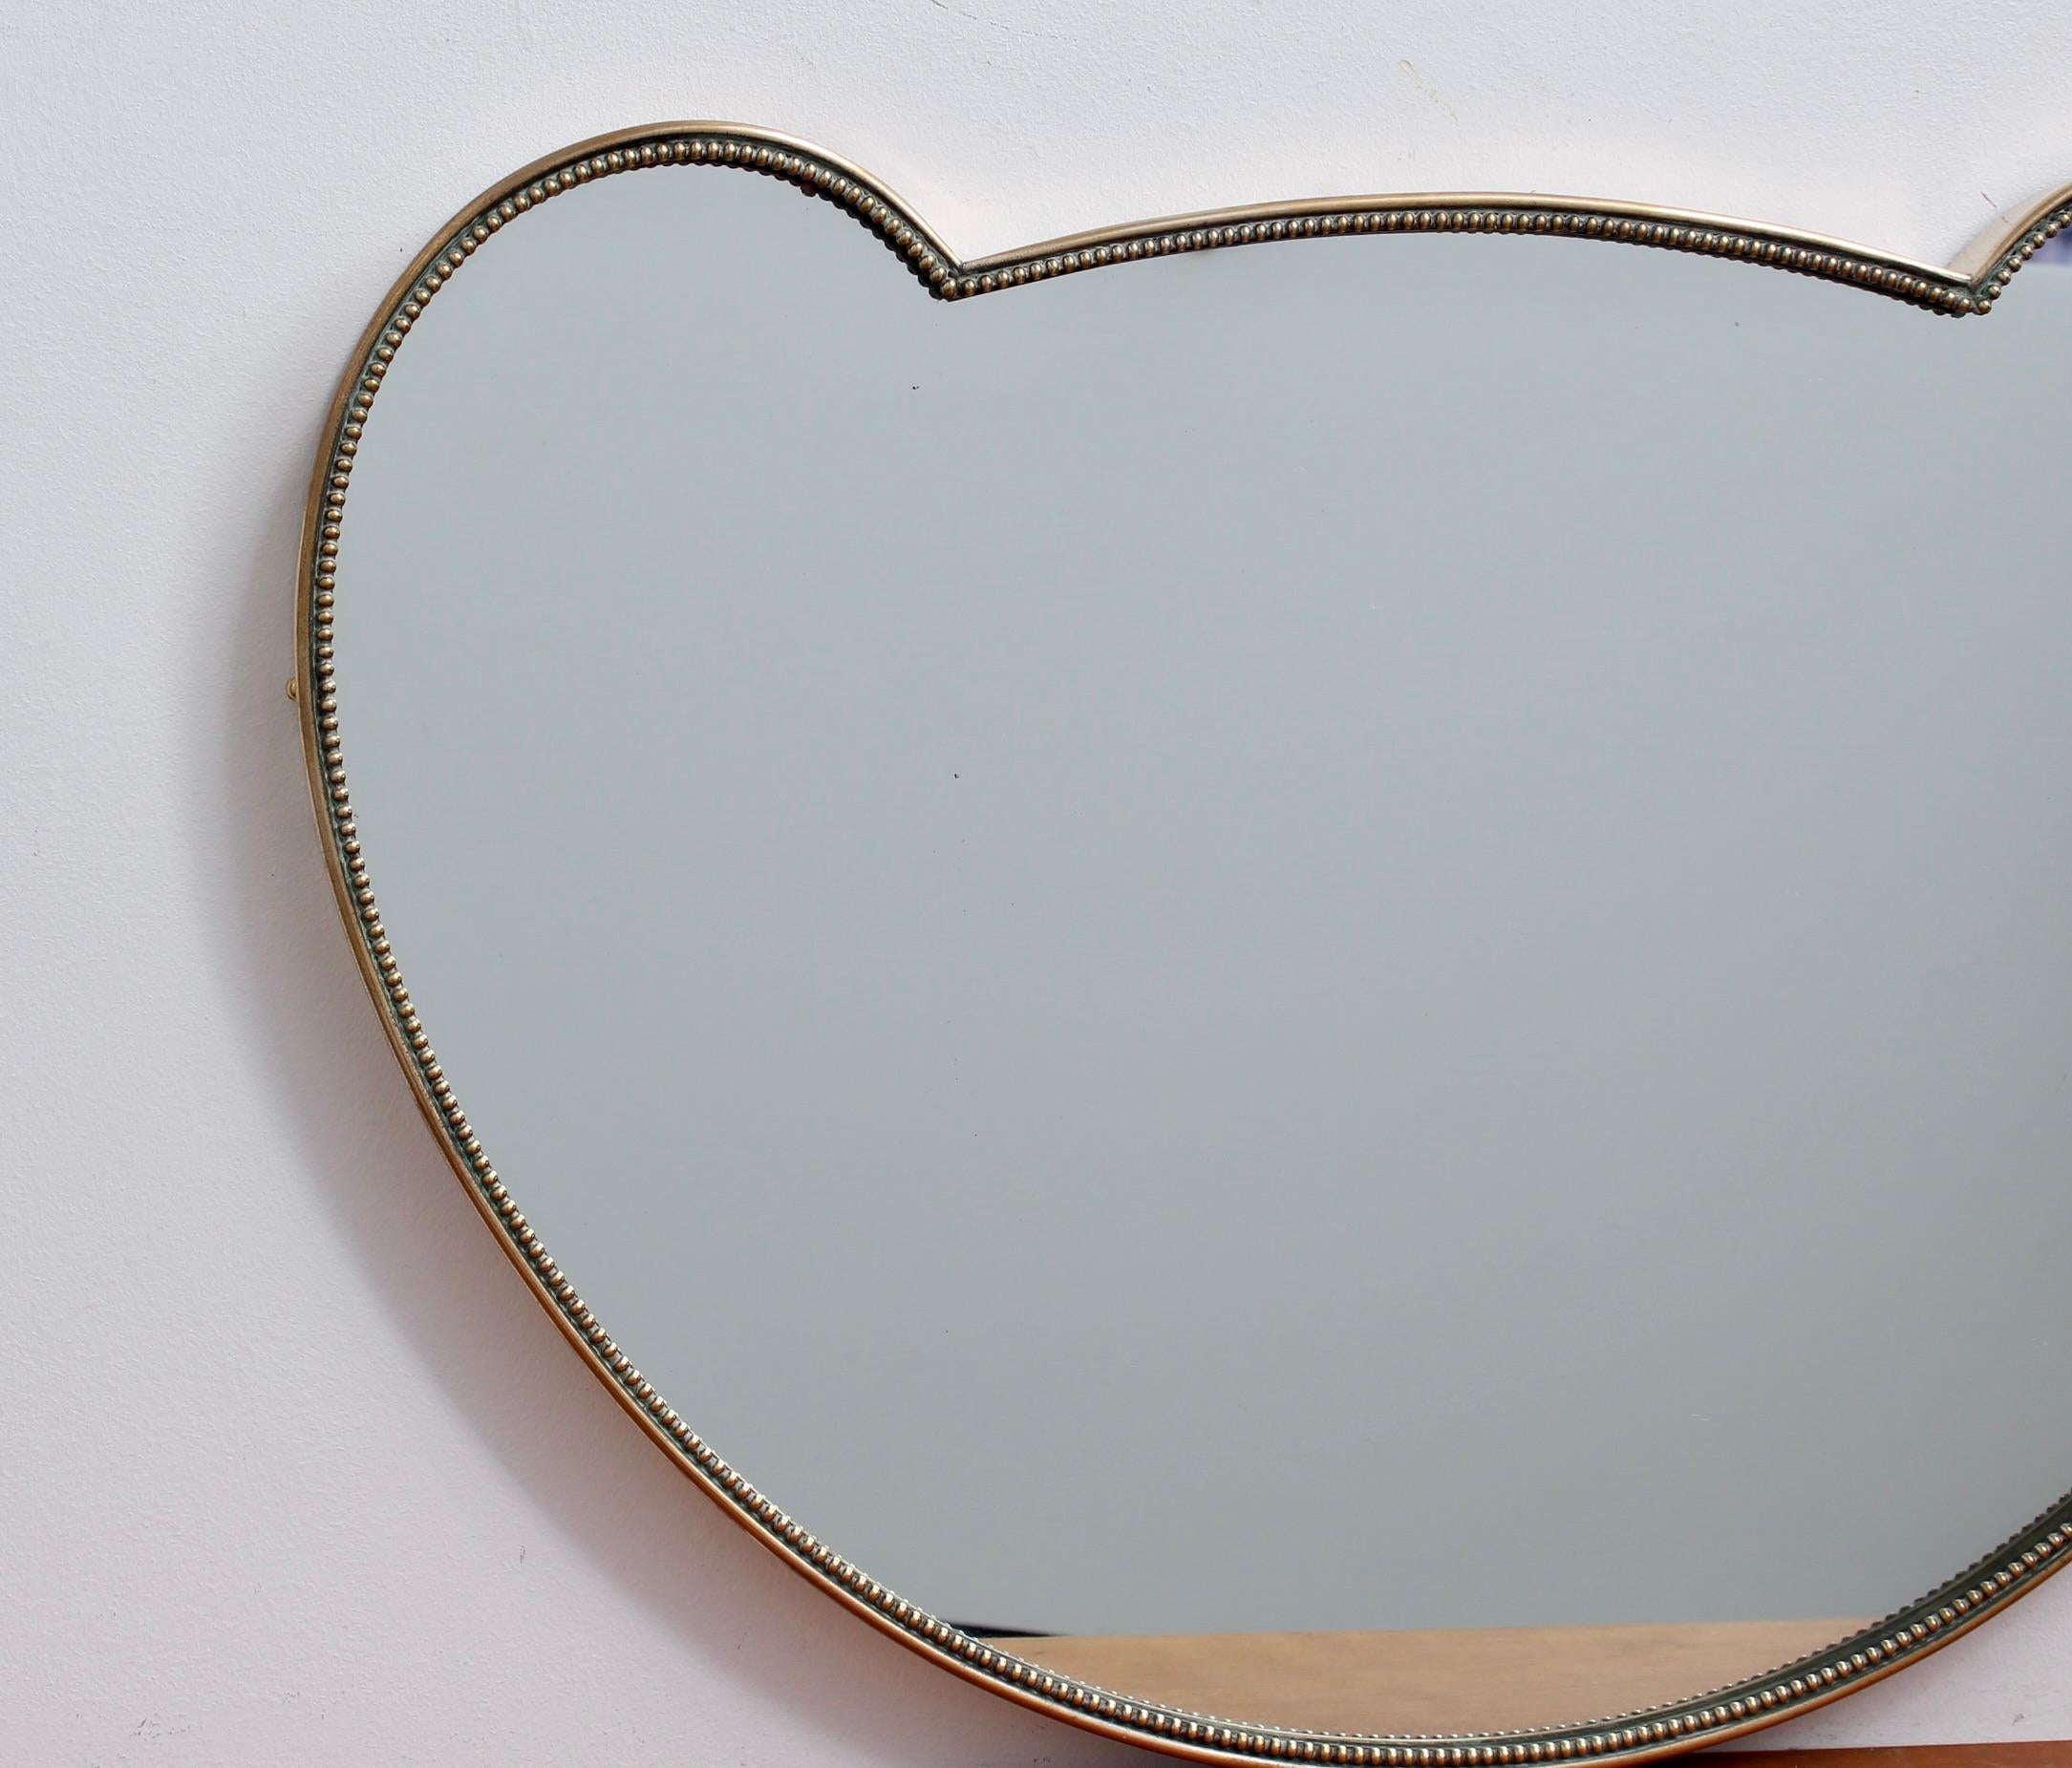 Petit miroir mural italien du milieu du siècle avec cadre en laiton (circa 1950s). Le miroir est d'une forme rare (oreilles de Mickey Mouse ?) combinant des courbes somptueuses et un joli bourrelet entourant le cadre pour ajouter un intérêt